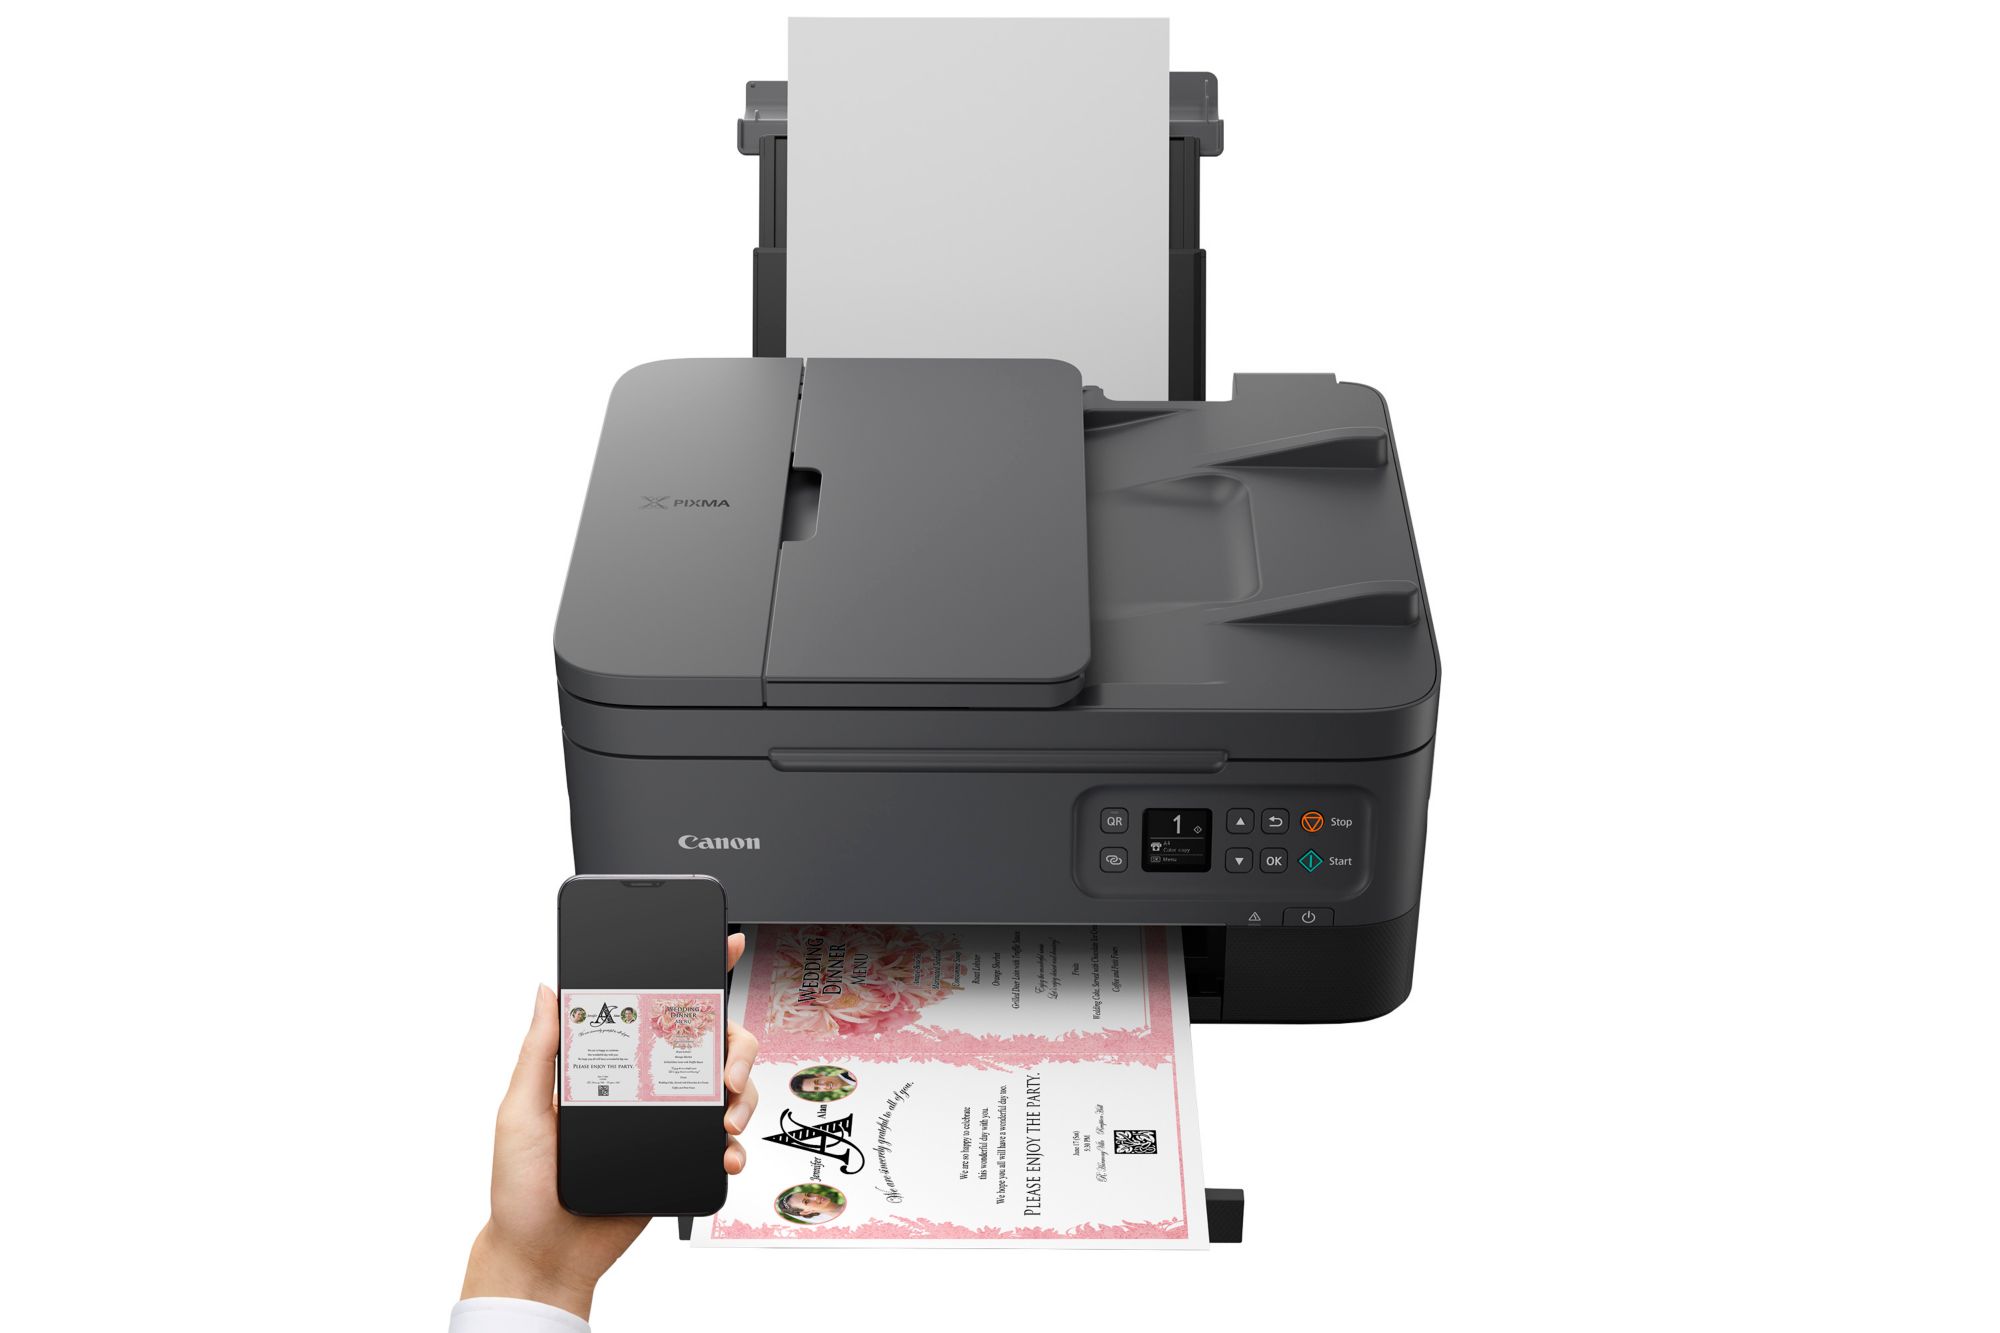 WLAN TS7450a Kopierer Tintenstrahl-Multifunktionsdrucker ++ Cyberport PIXMA Scanner Canon